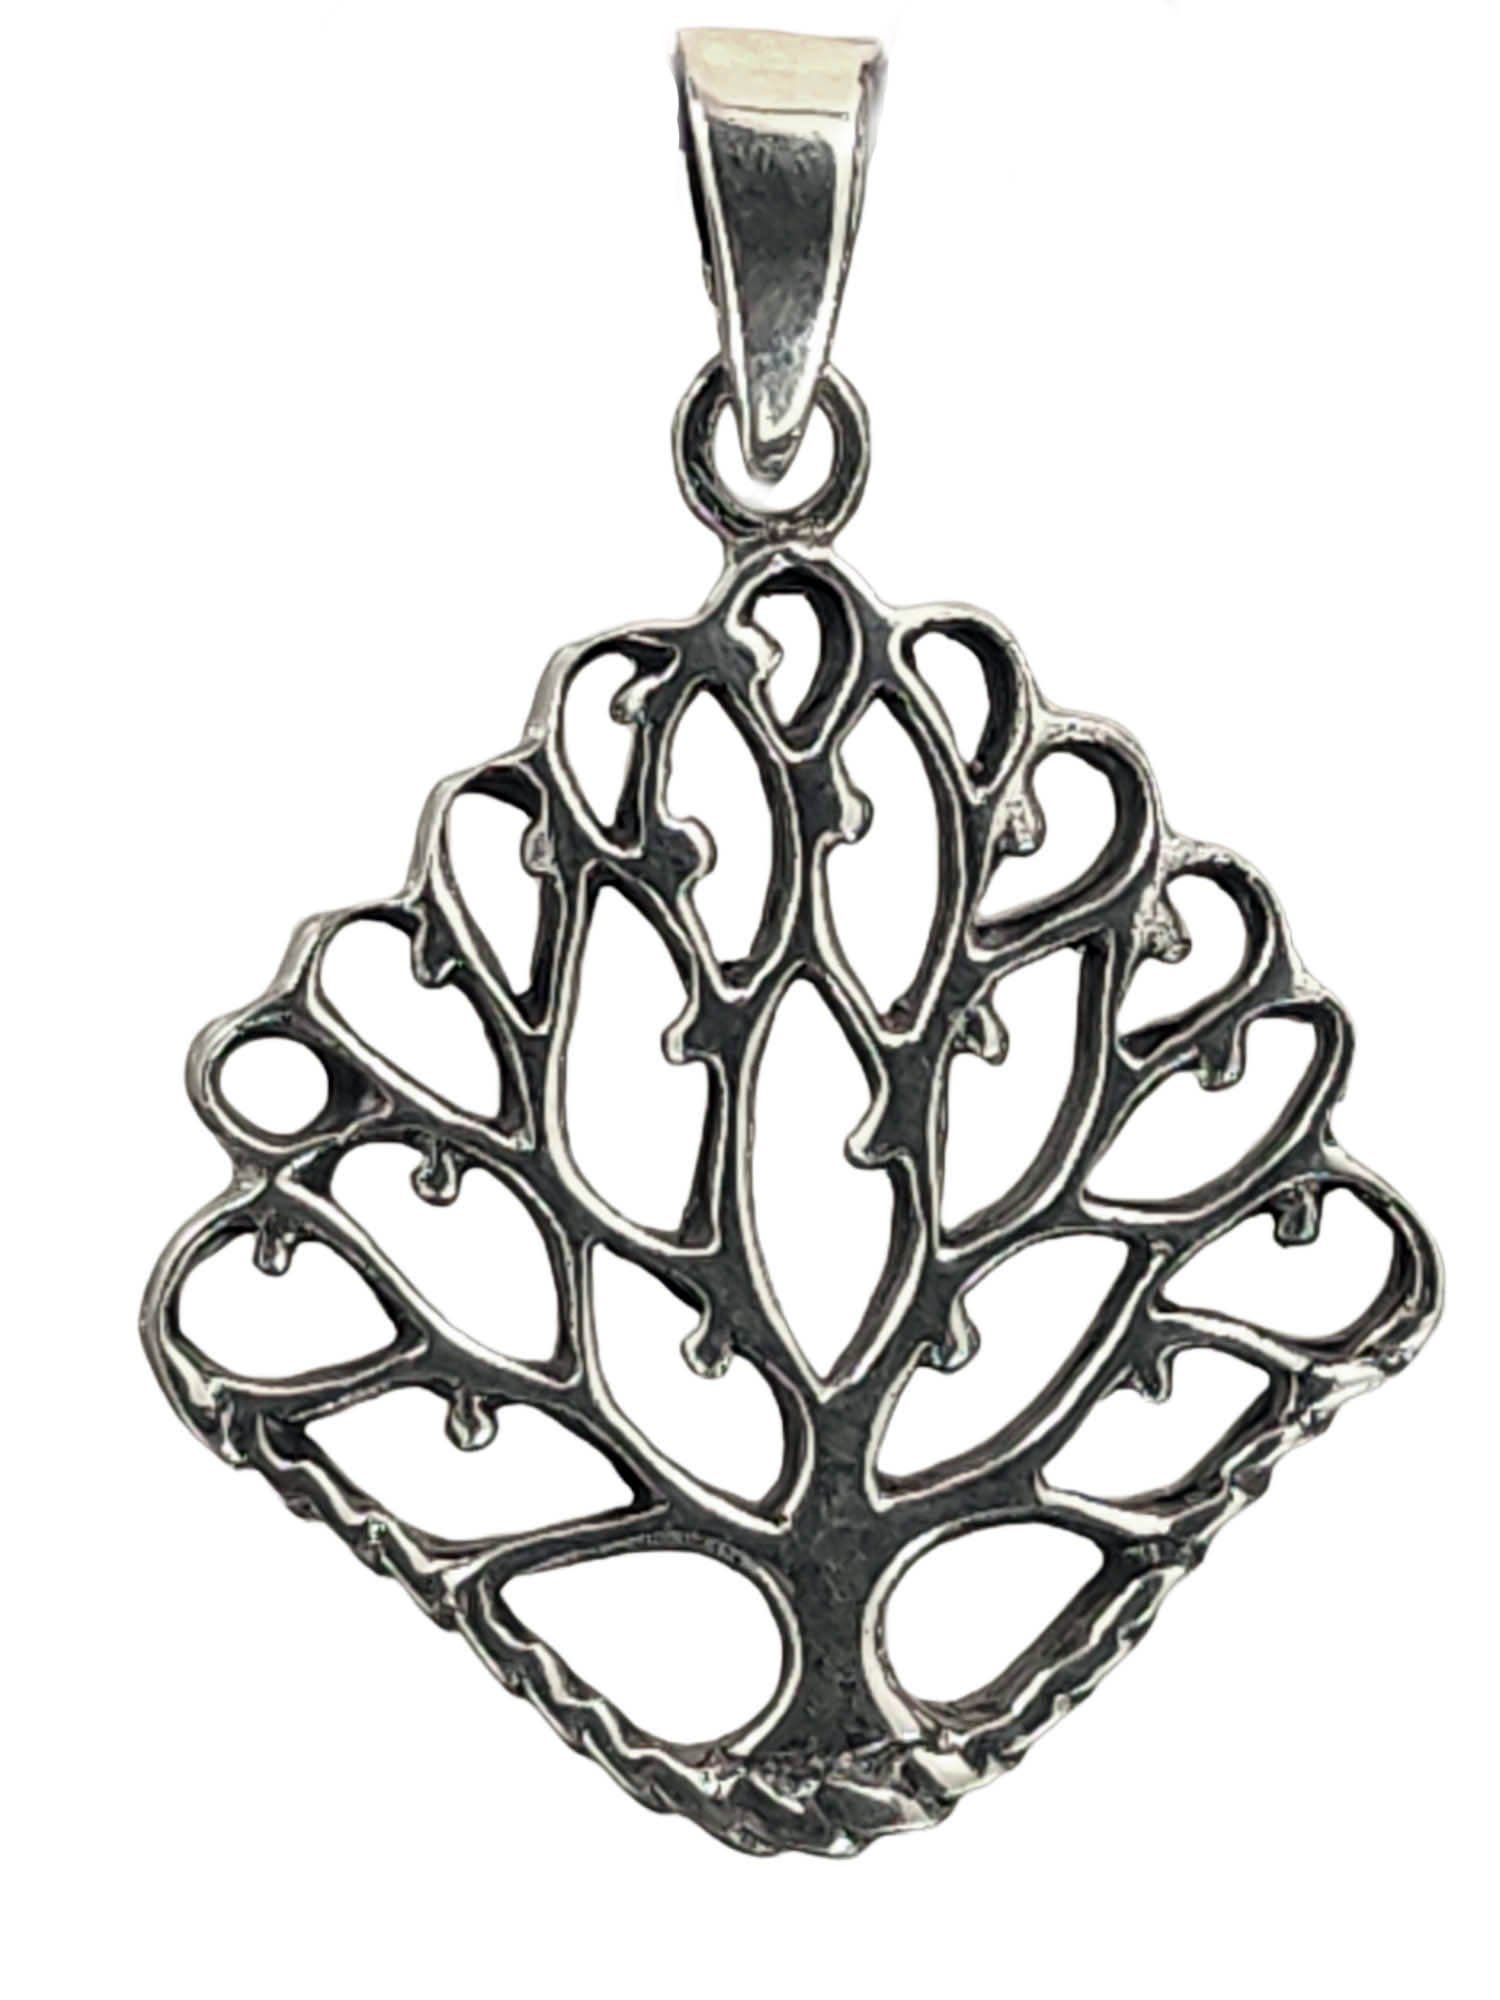 Tree of Silber Yggdrasil of Baum Live Lebens 925 Kettenanhänger Anhänger Kiss Weltesche Lebensbaum Leather